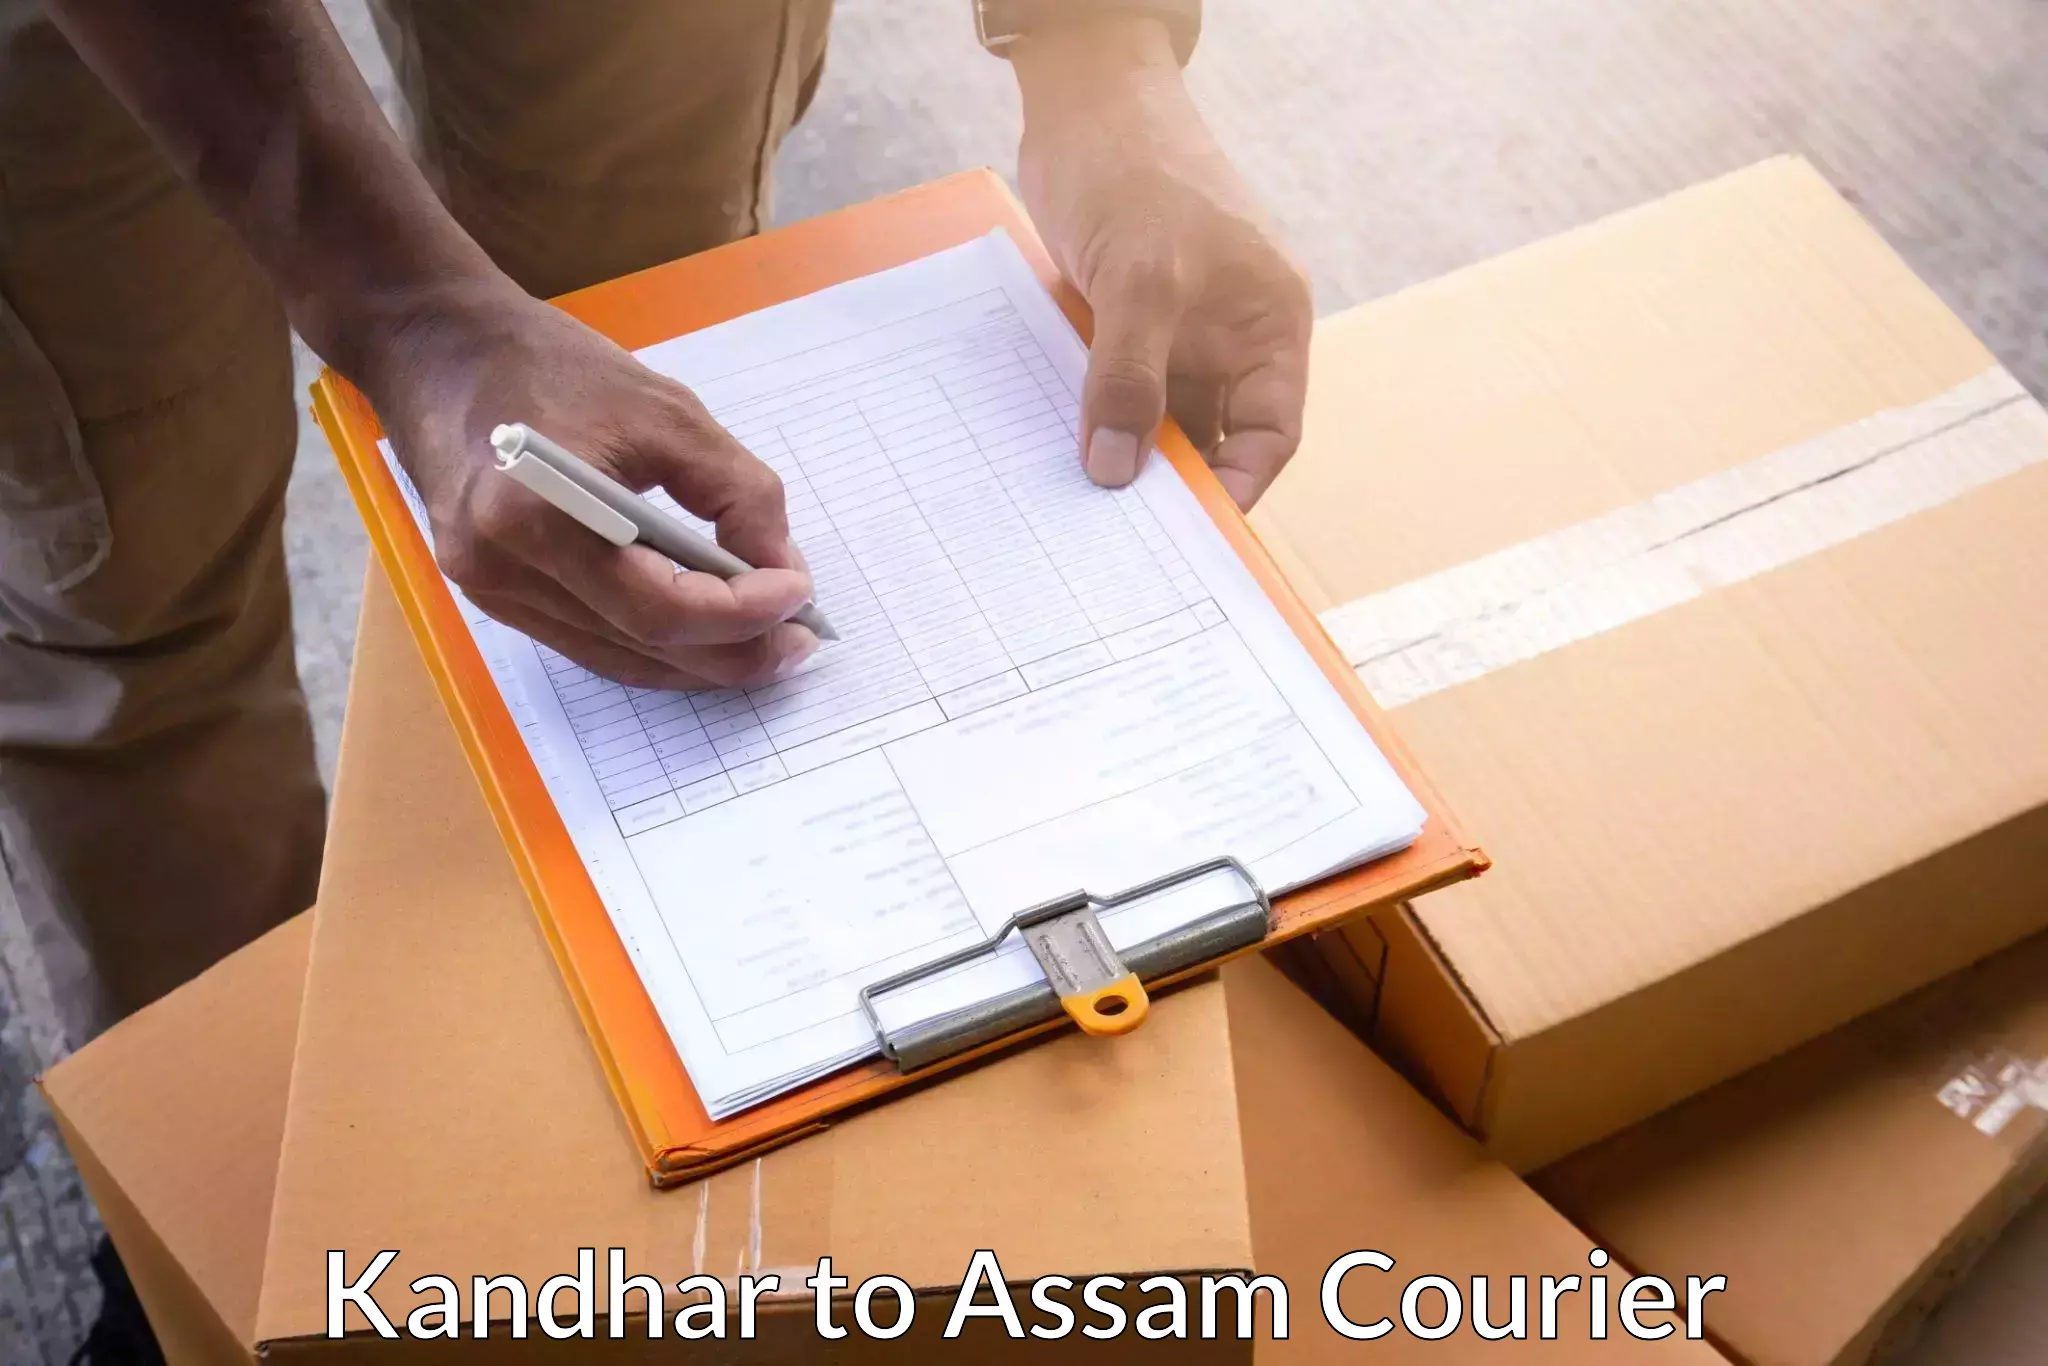 Efficient logistics management Kandhar to Dehurda